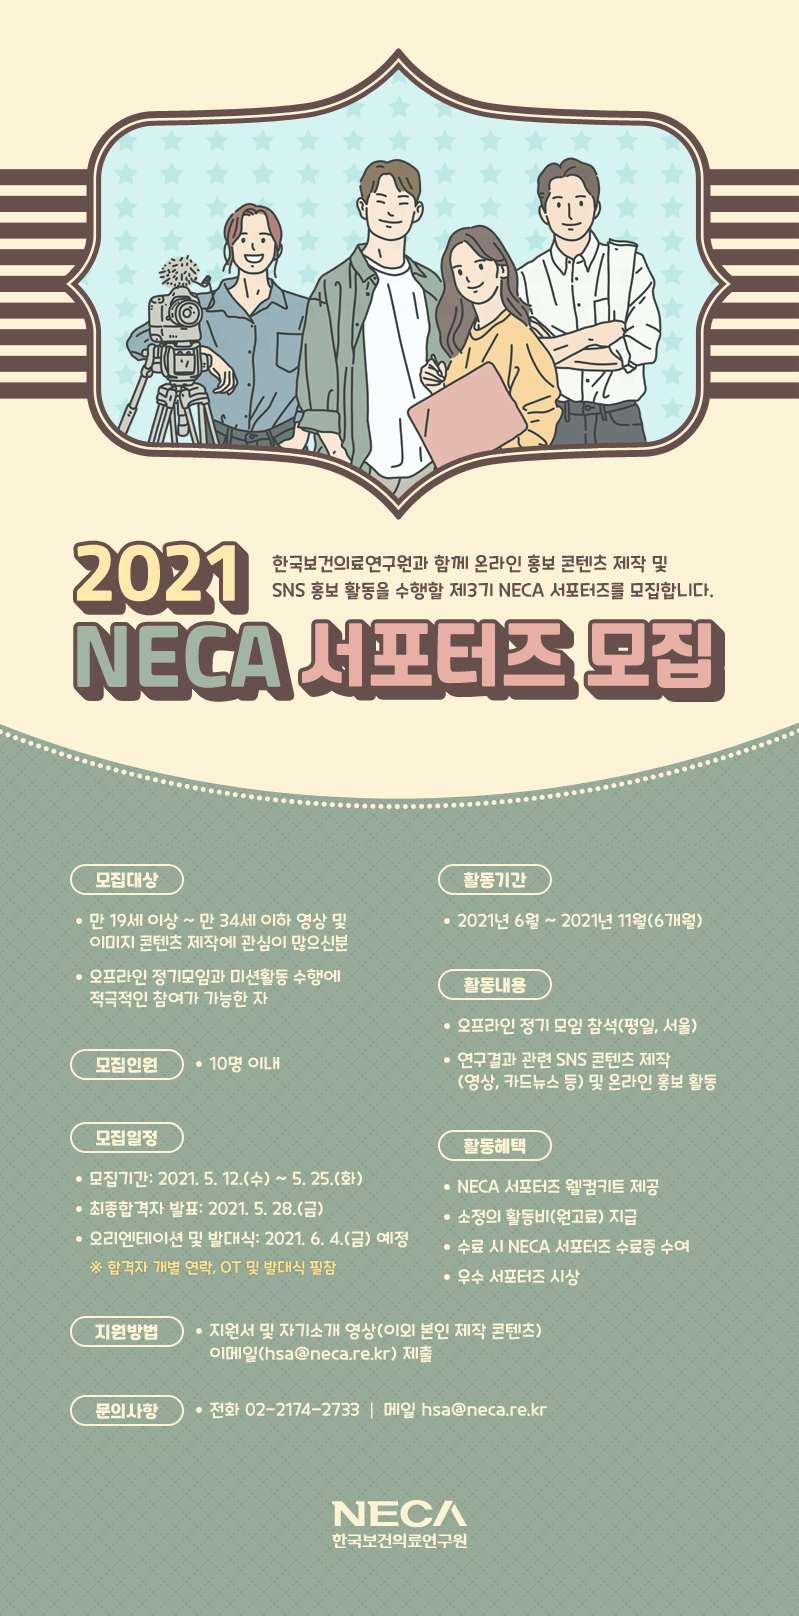 (한국보건의료연구원) 2021 NECA 서포터즈